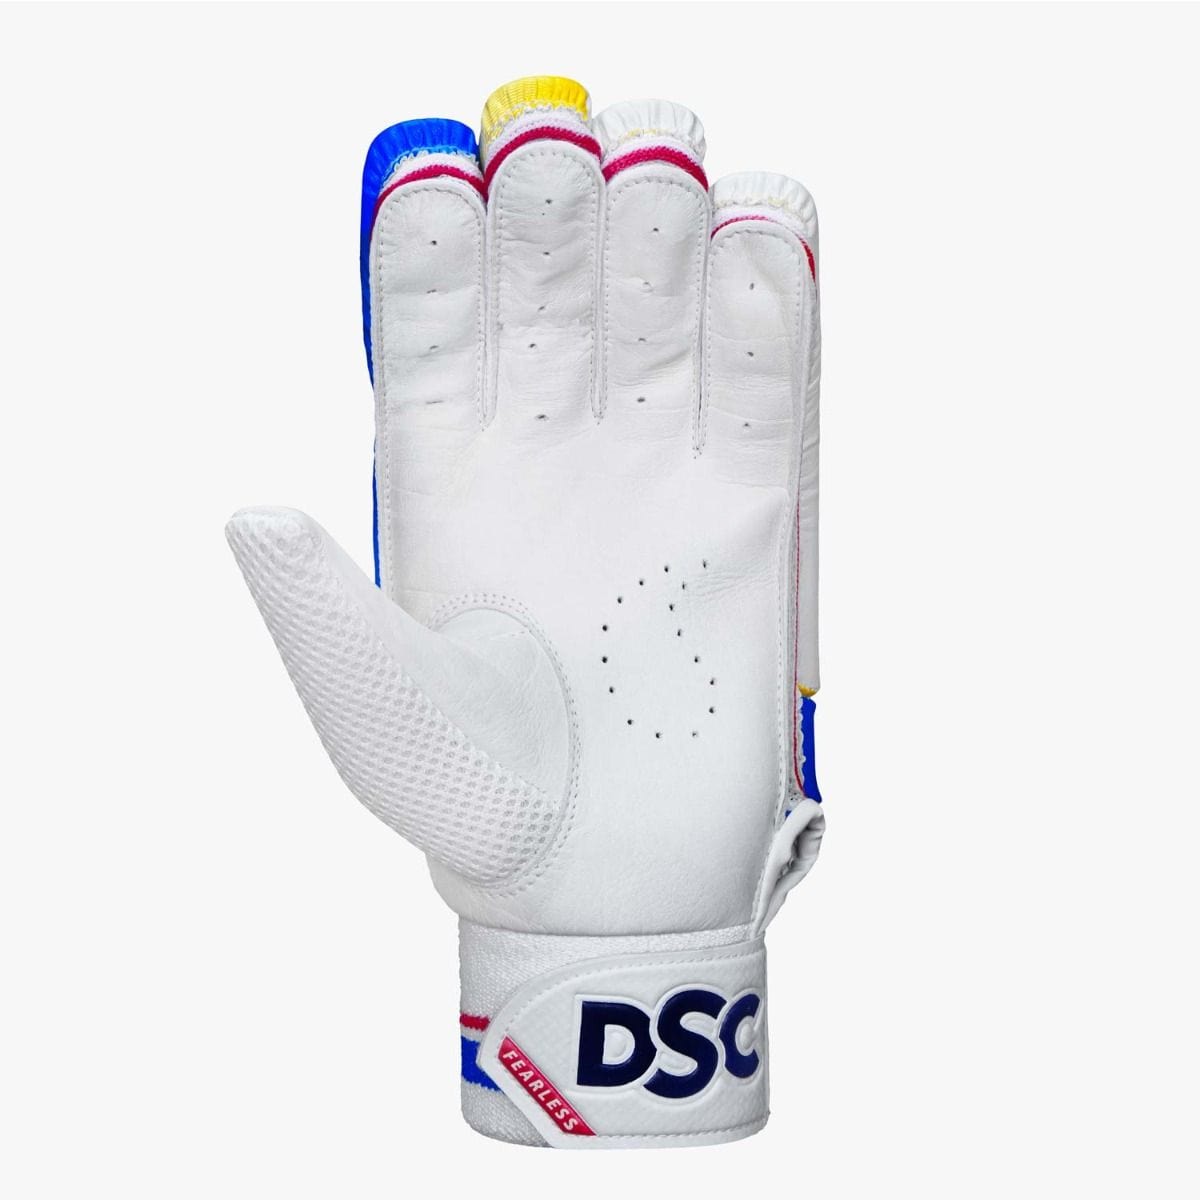 DSC Batting Gloves Intense Rage Batting Gloves